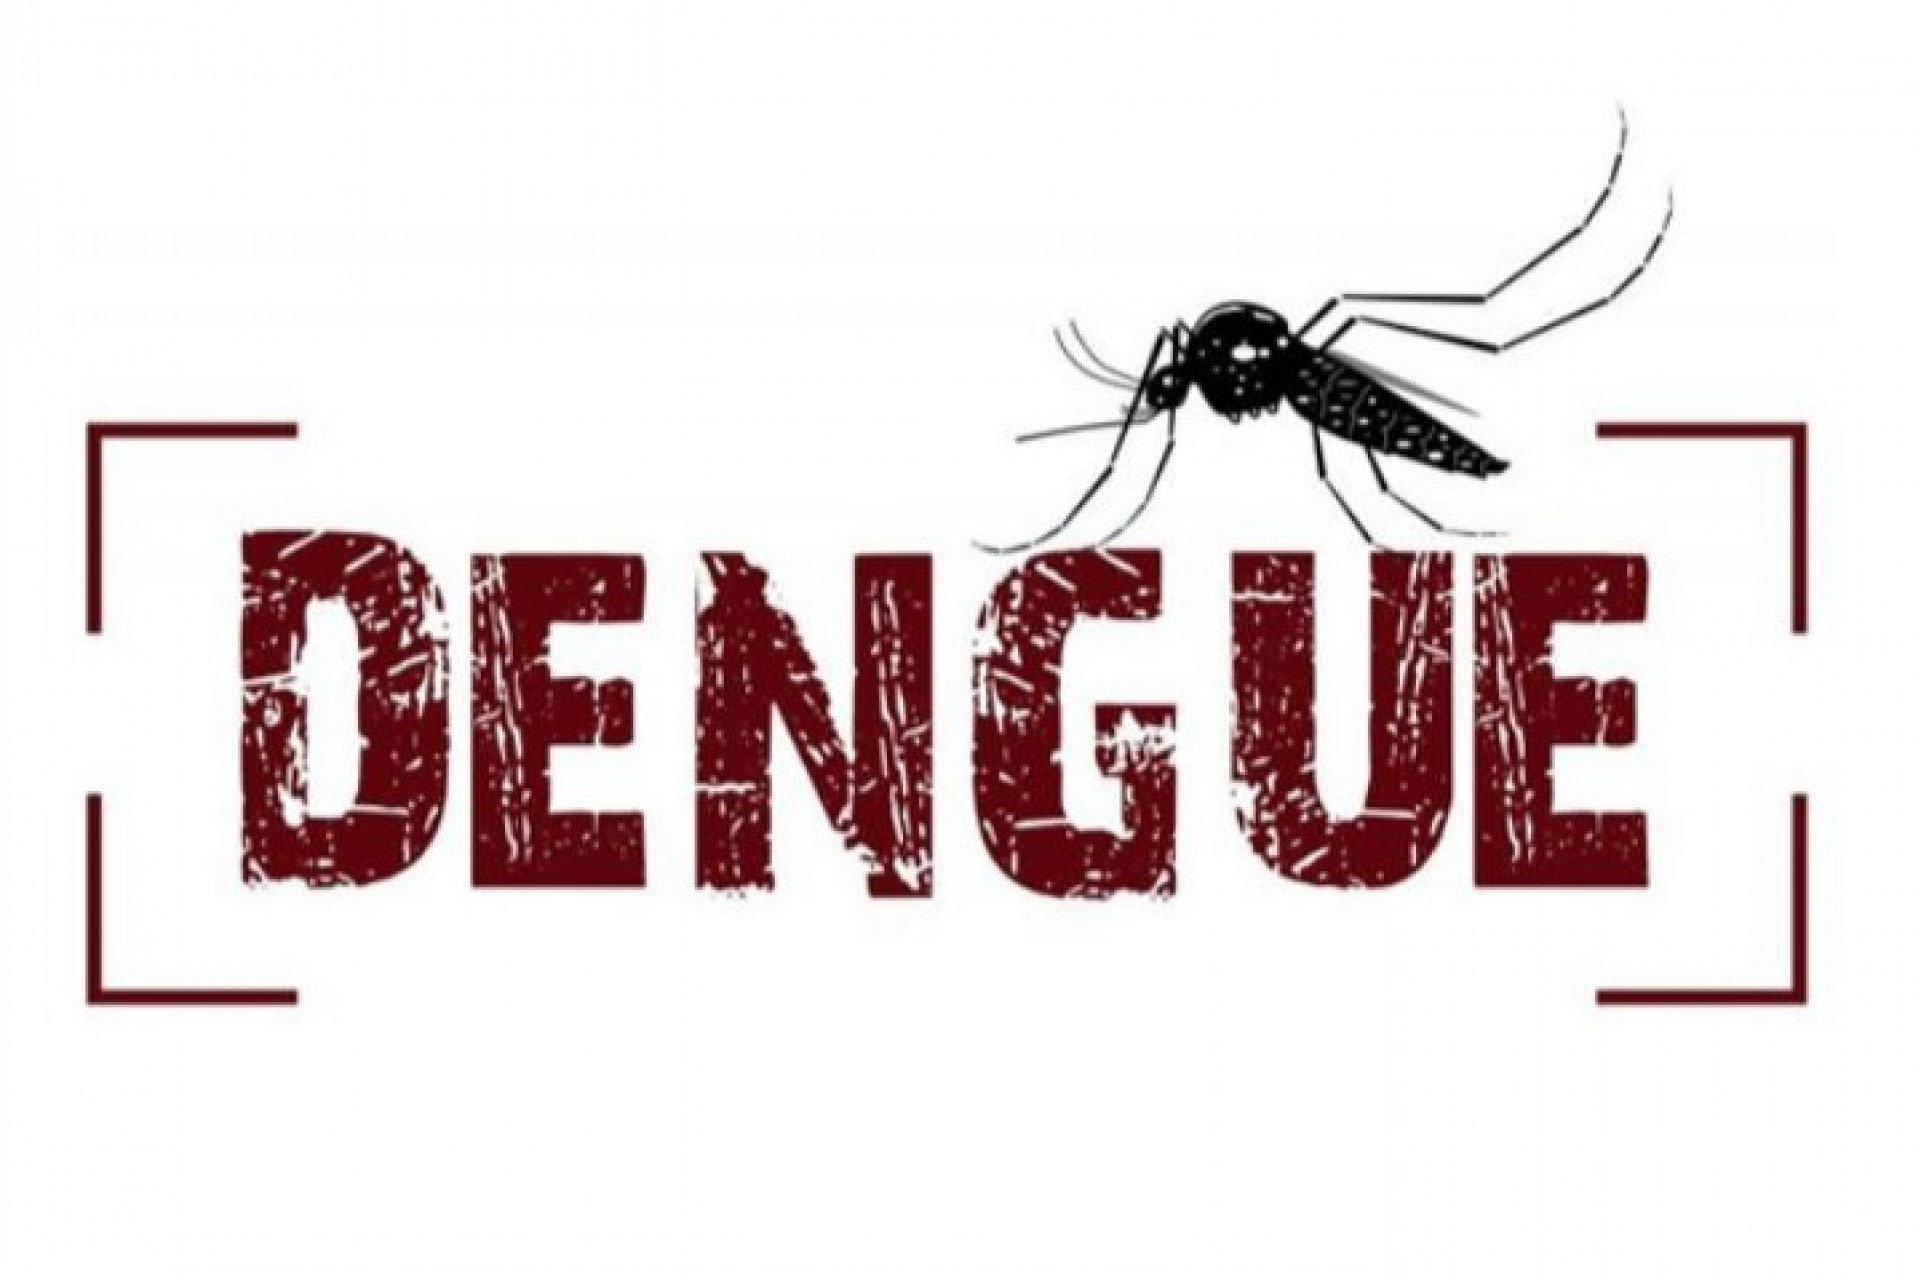 Administração Municipal de Missal reforça pedido sobre os cuidados com a dengue